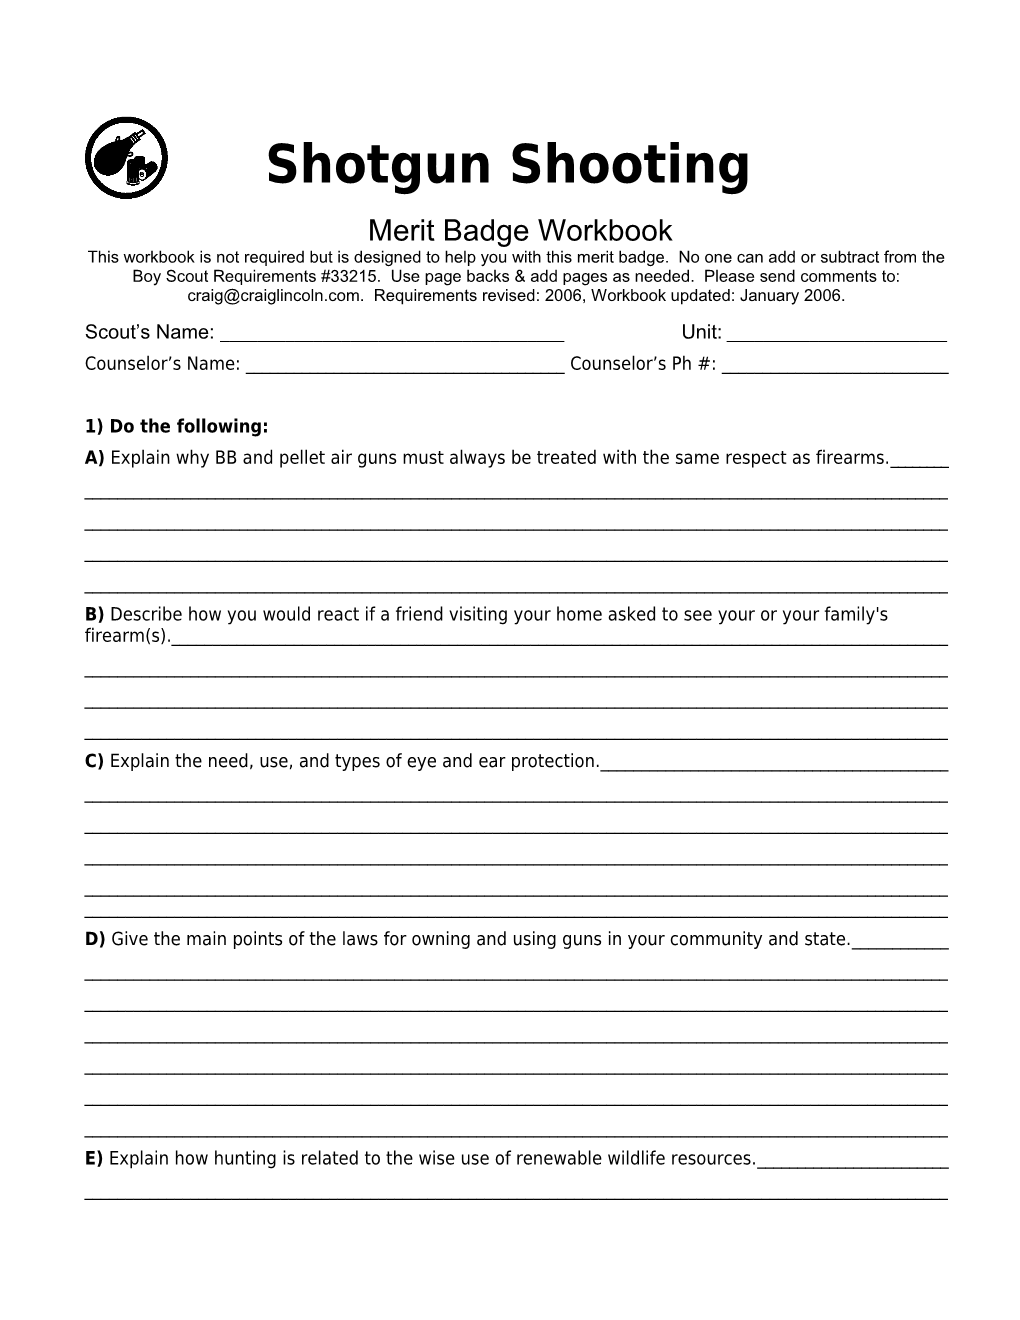 Shotgun Shooting P. 3 Merit Badge Workbook Scout's Name: ______